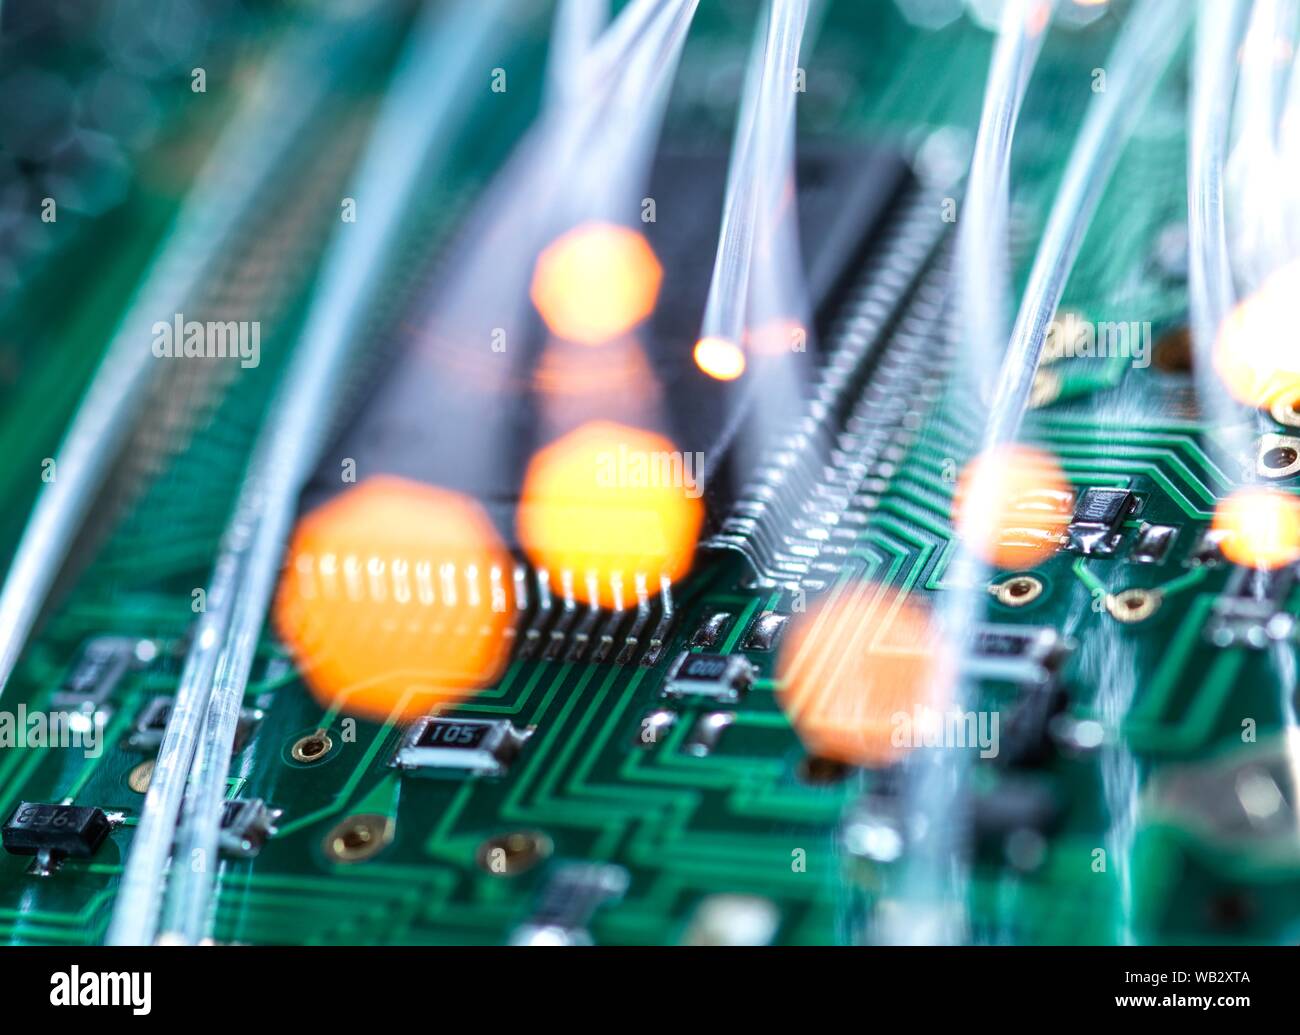 Comunicación digital, imagen conceptual. La fibra óptica transporta datos a través de circuitos electrónicos de un ordenador portátil. Foto de stock